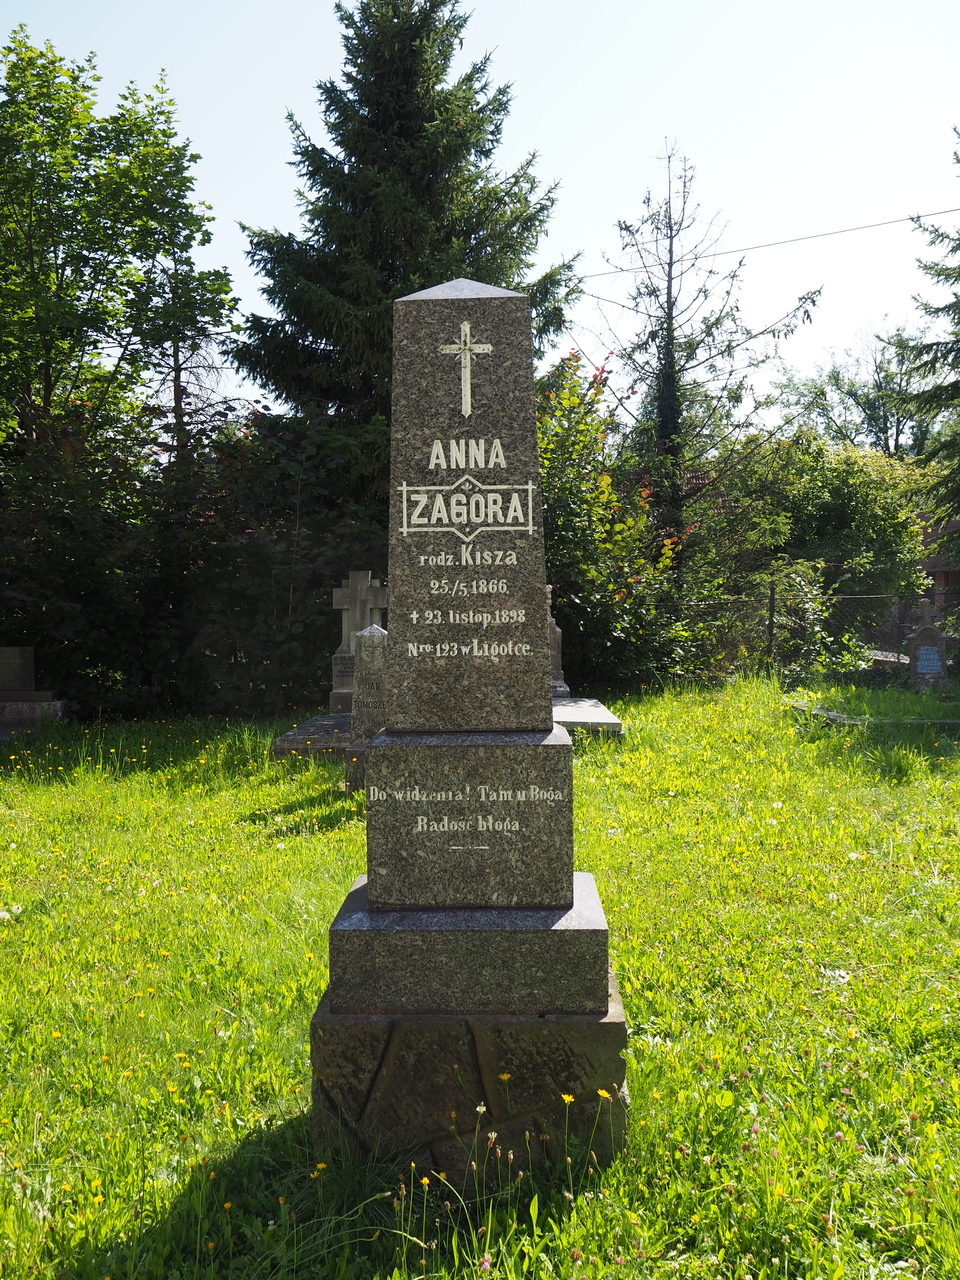 Tombstone of Anna Zagóra, cemetery in Ligotka Kameralna, state from 2022